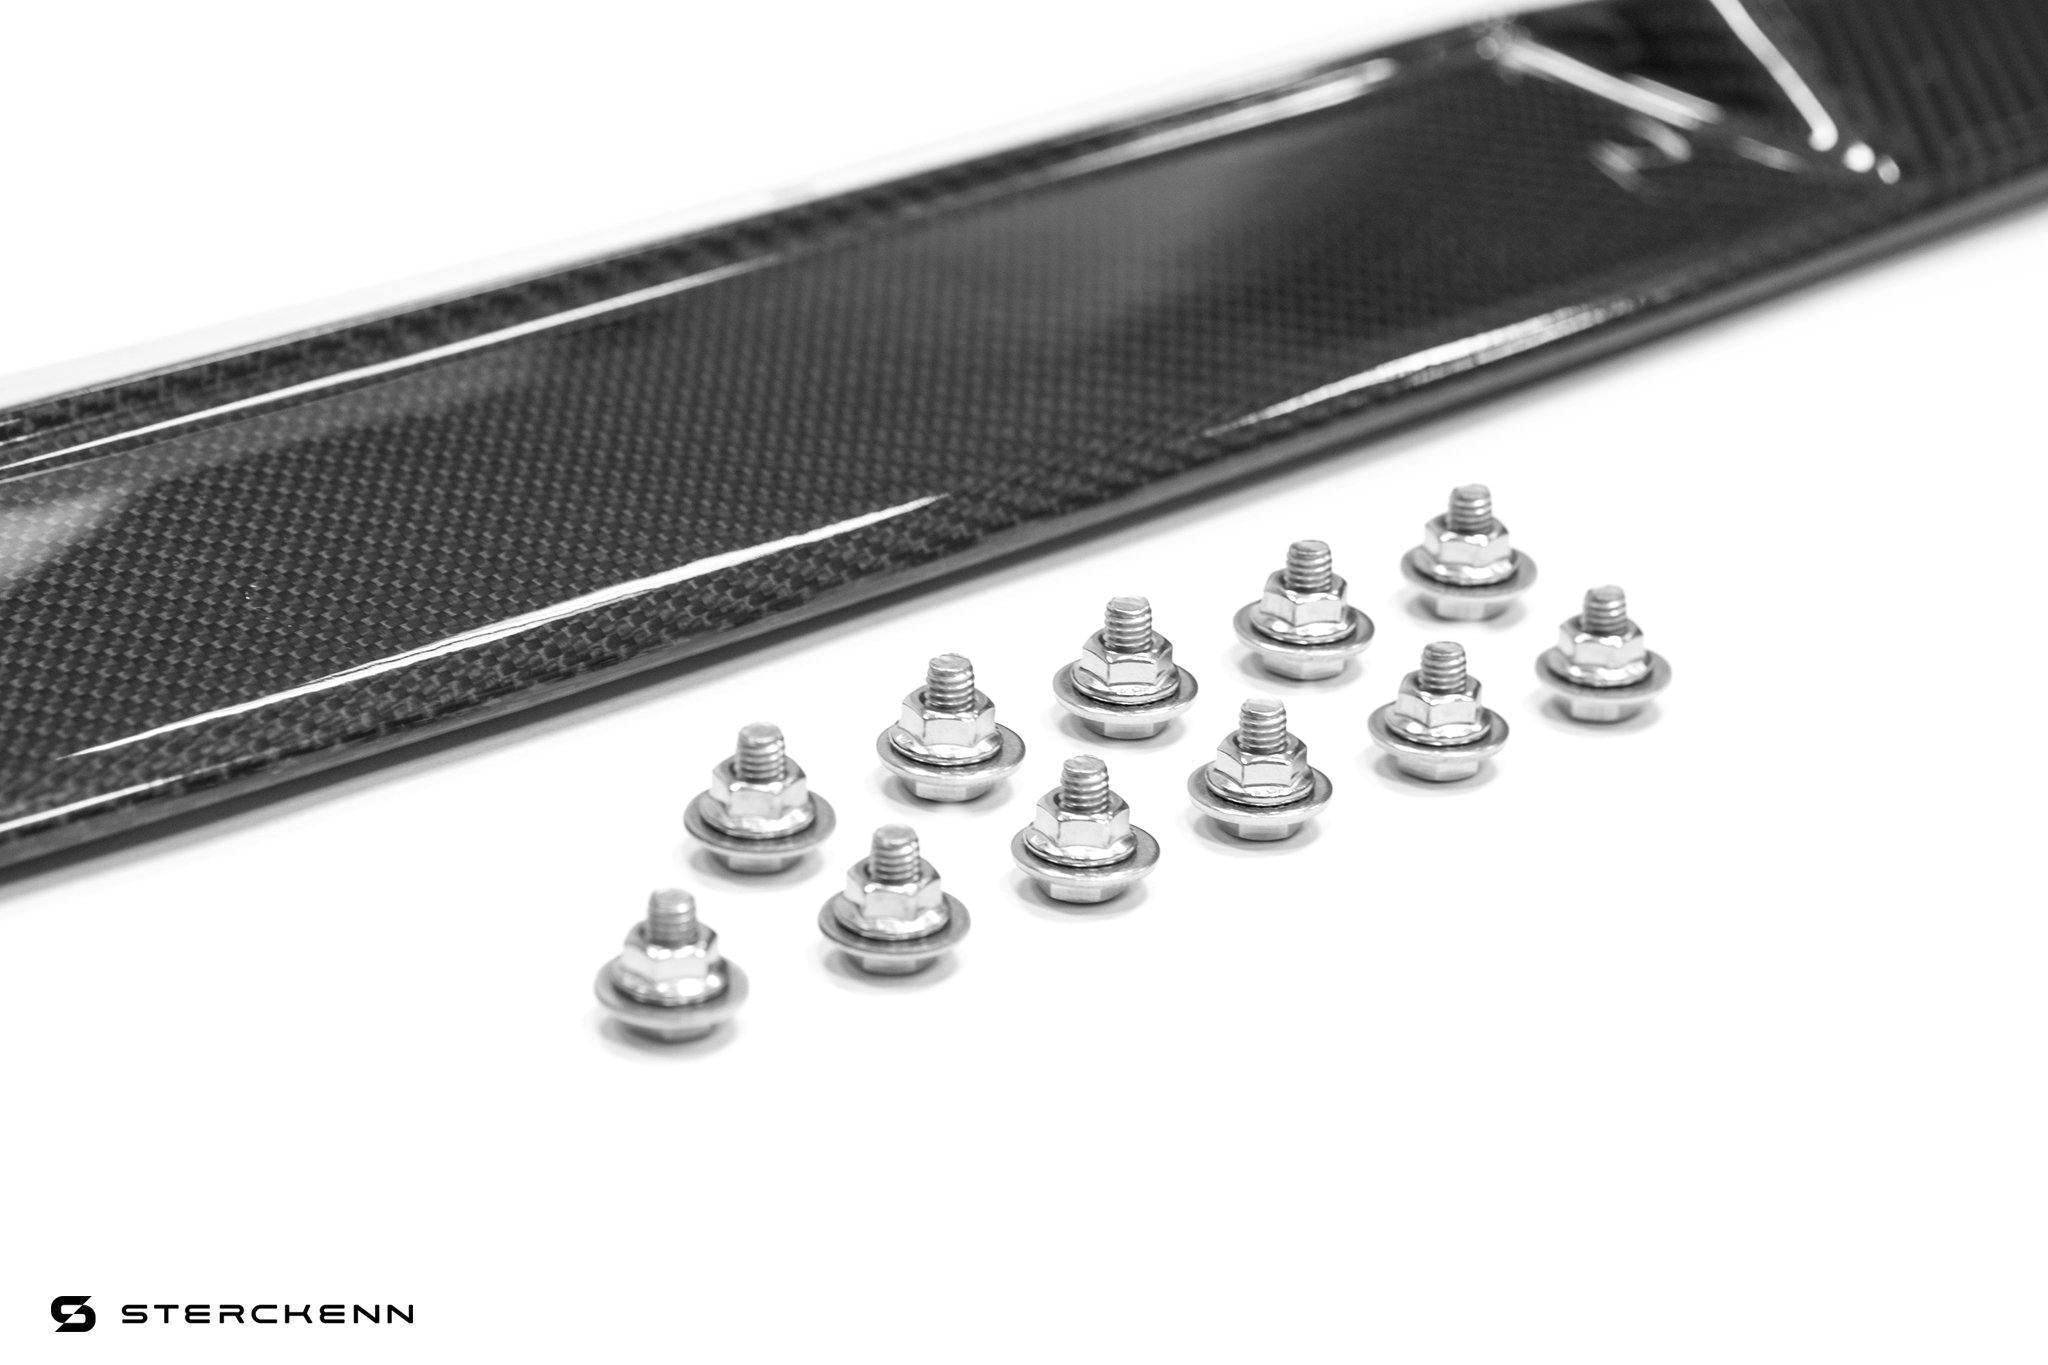 Sterckenn Carbon Fibre Front Lip for BMW X5M (2020+, F95)